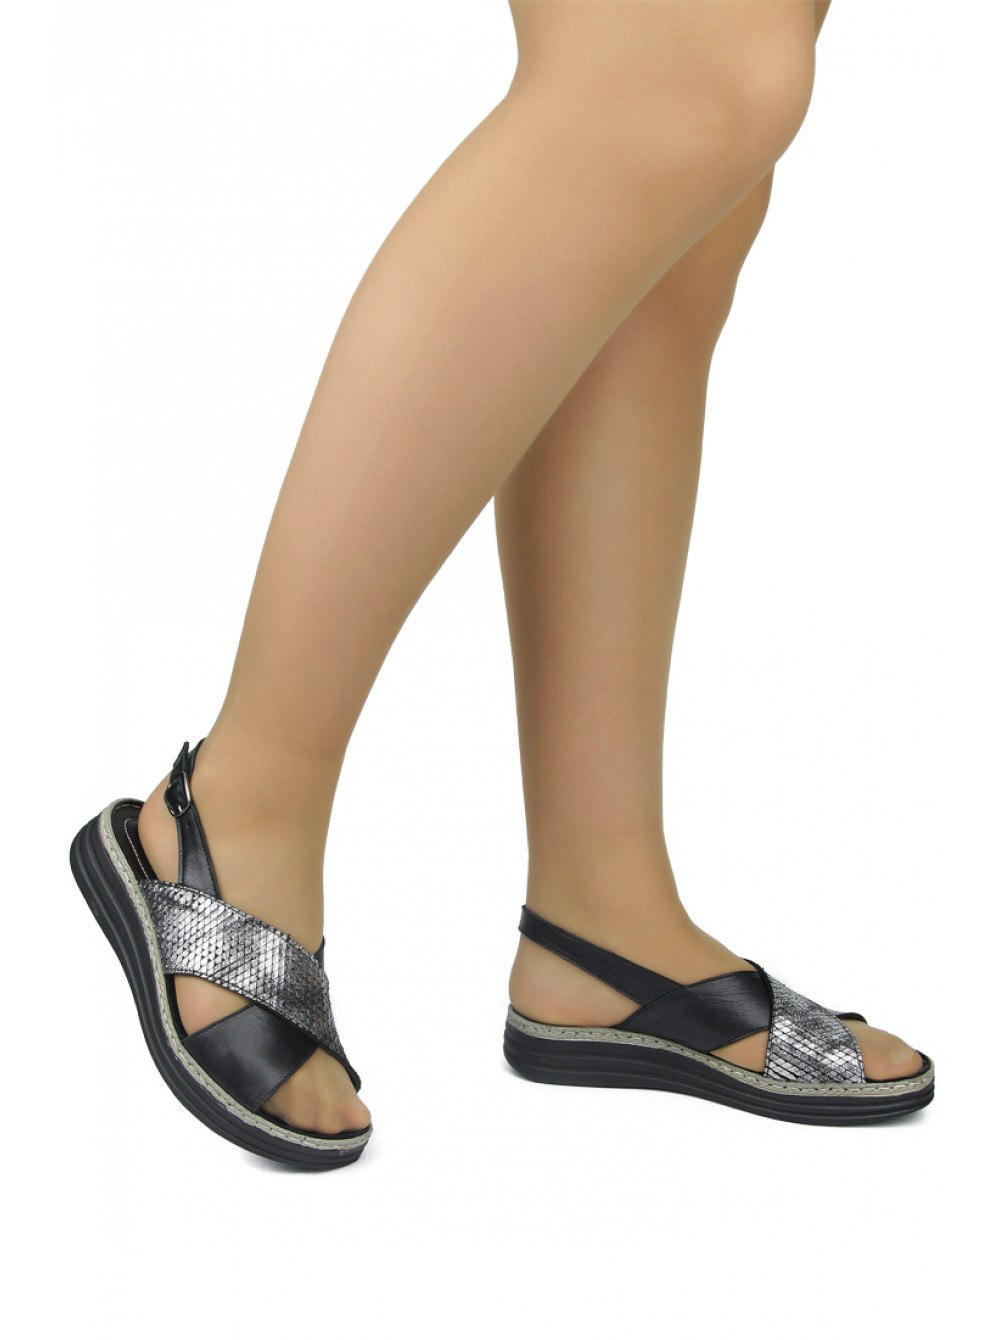 Вайлдберриз обувь женская лето. Босоножки 2022 женские на вайлдберриз. Обувь на валберис женская летняя босоножки. DAKKEM турецкая обувь. Обувь на валберис женская летняя босоножки на широкую ногу.